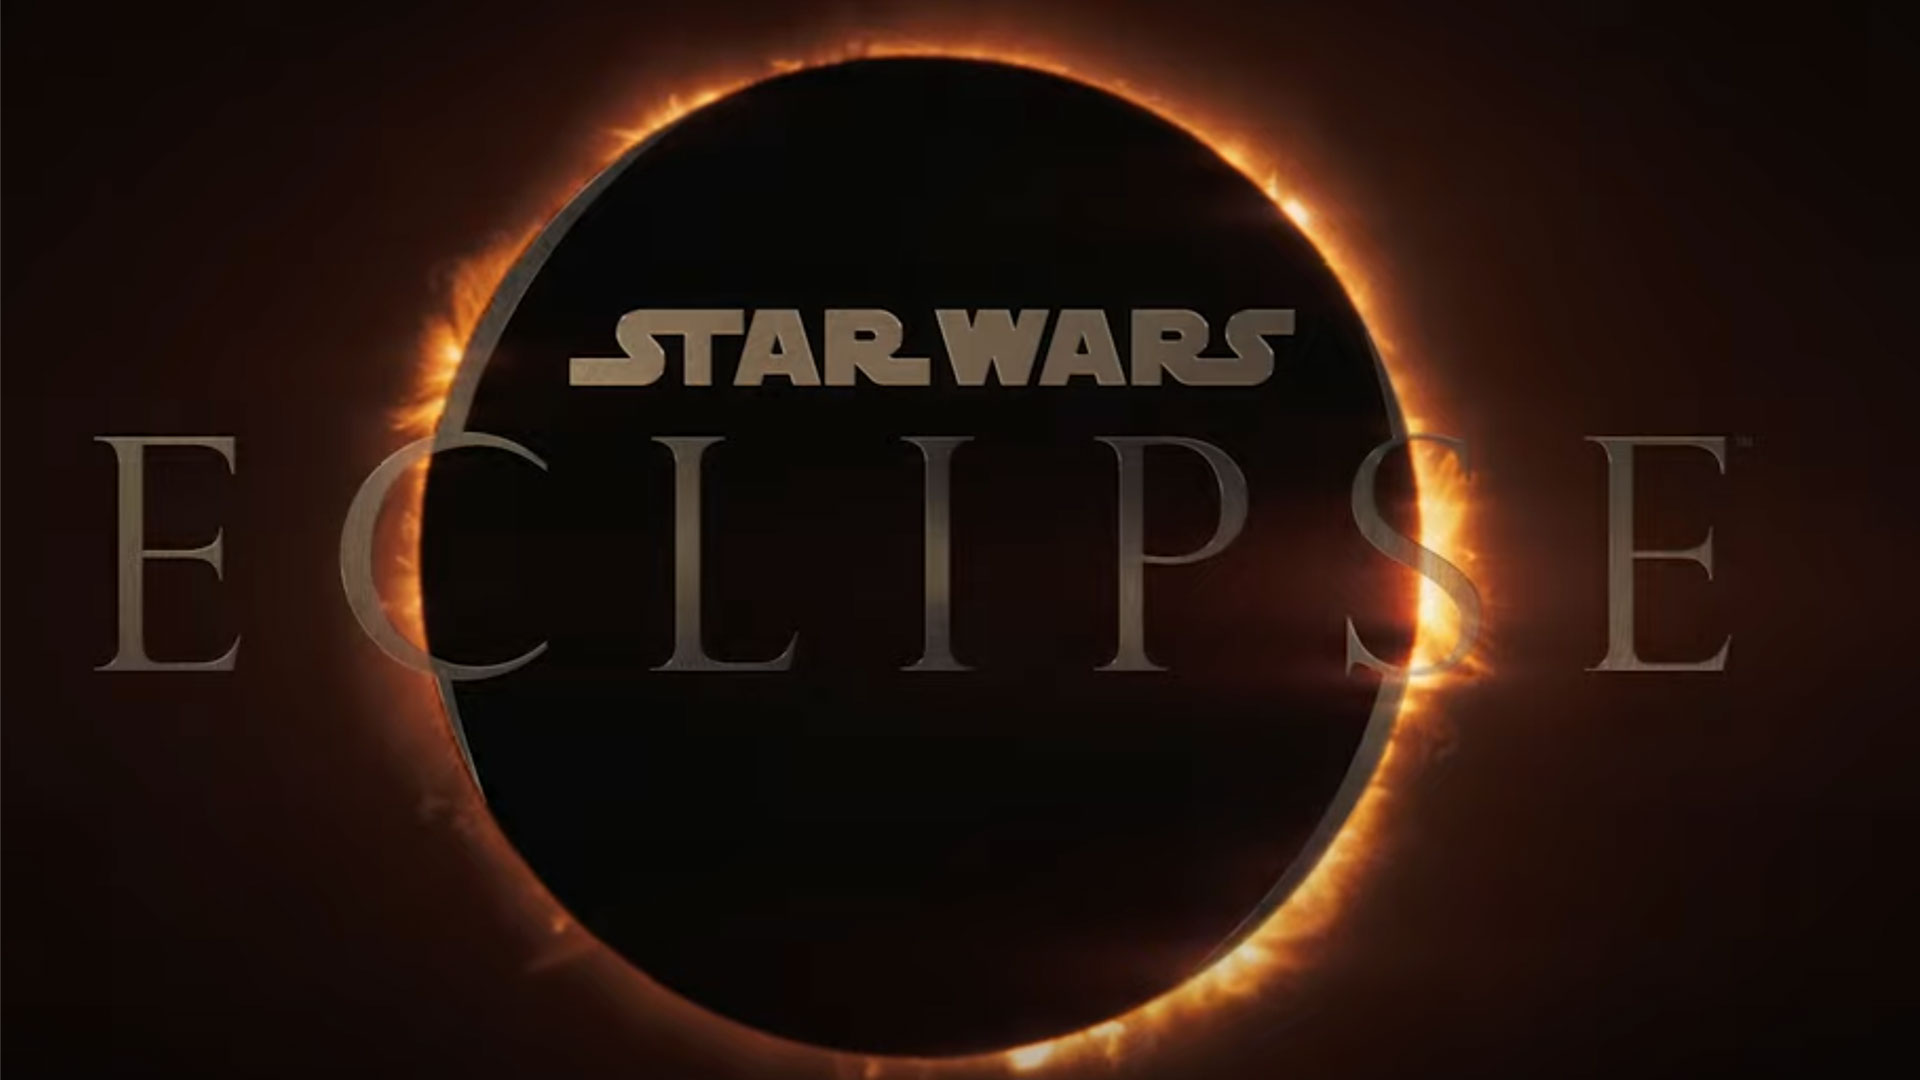 بازی Star Wars Eclipse معرفی شد؛ استار وارز به سبک کوانتیک دریم